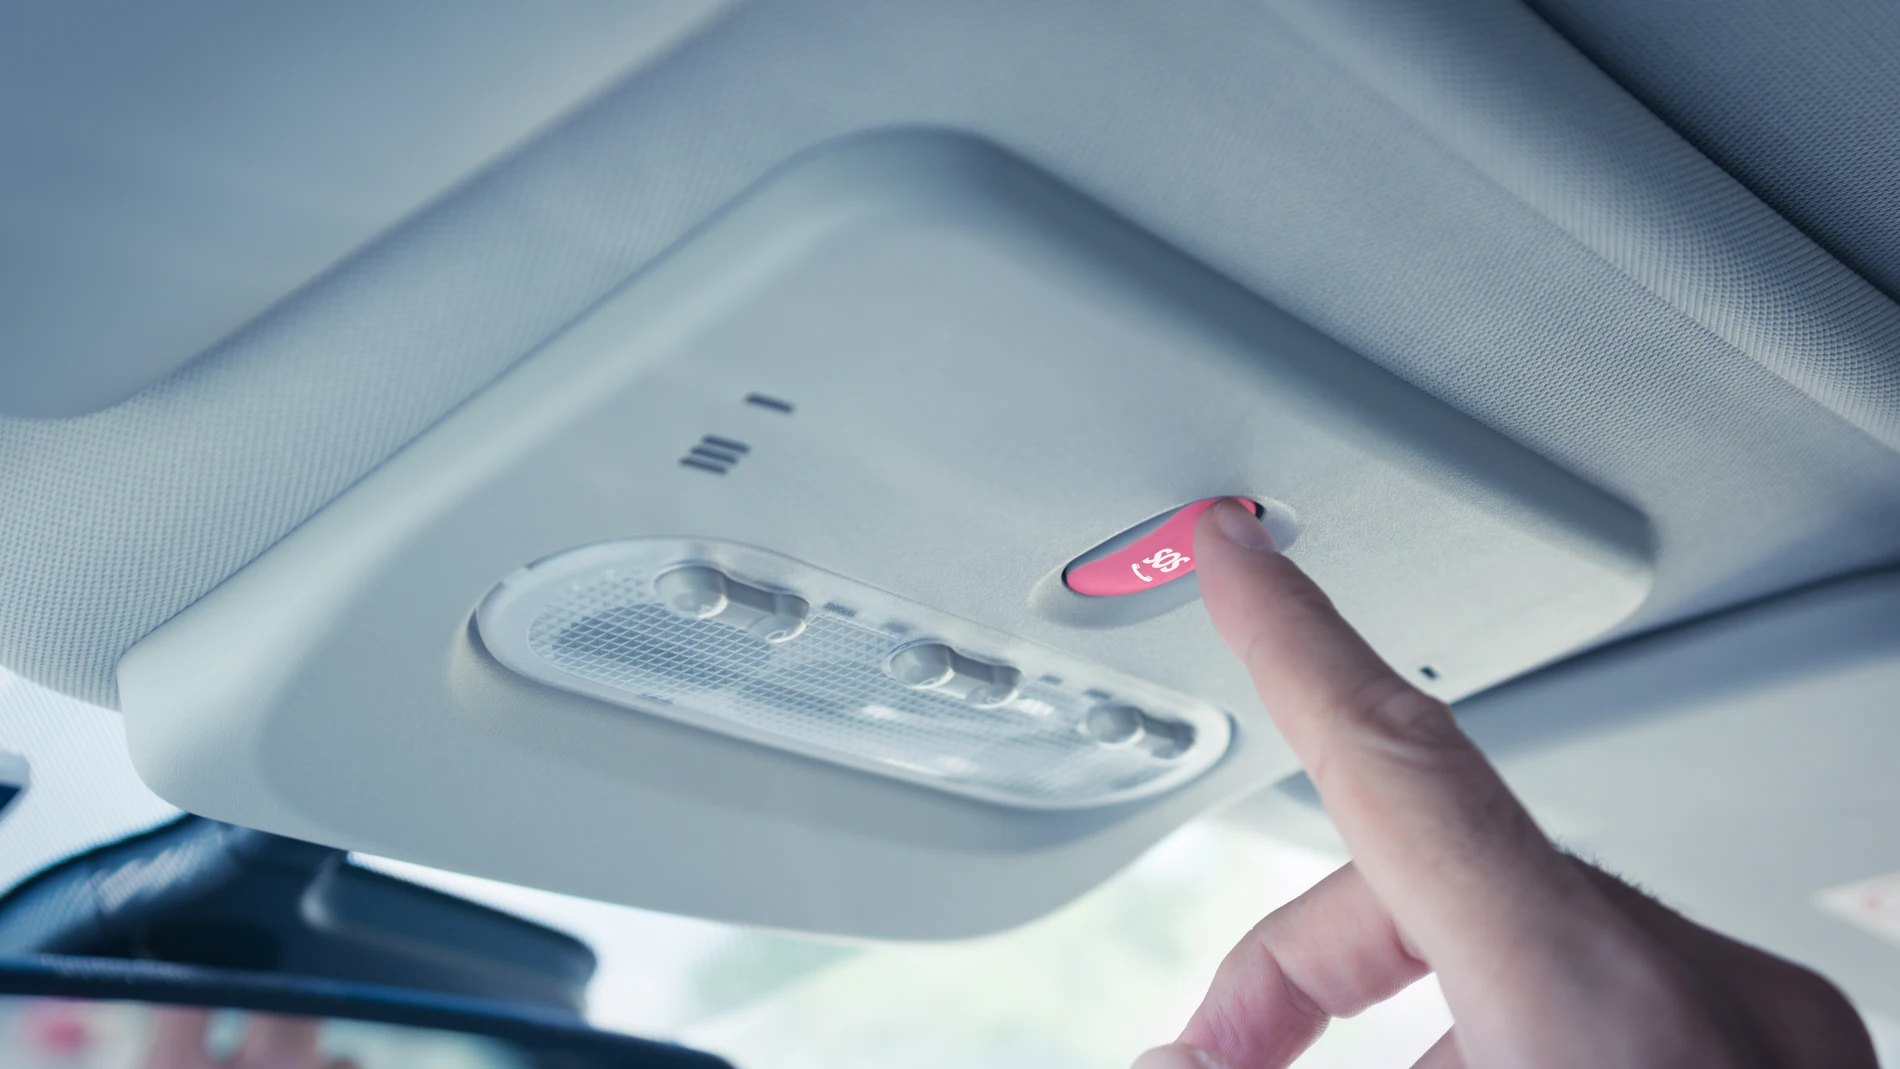 Todos los coches de nueva generación ya incluyen un botón SOS, con el que se puede realizar una llamada al centro de emergencias más próximo… como si se tratase de un teléfono móvil o fijo | Fuente: Dreamstime